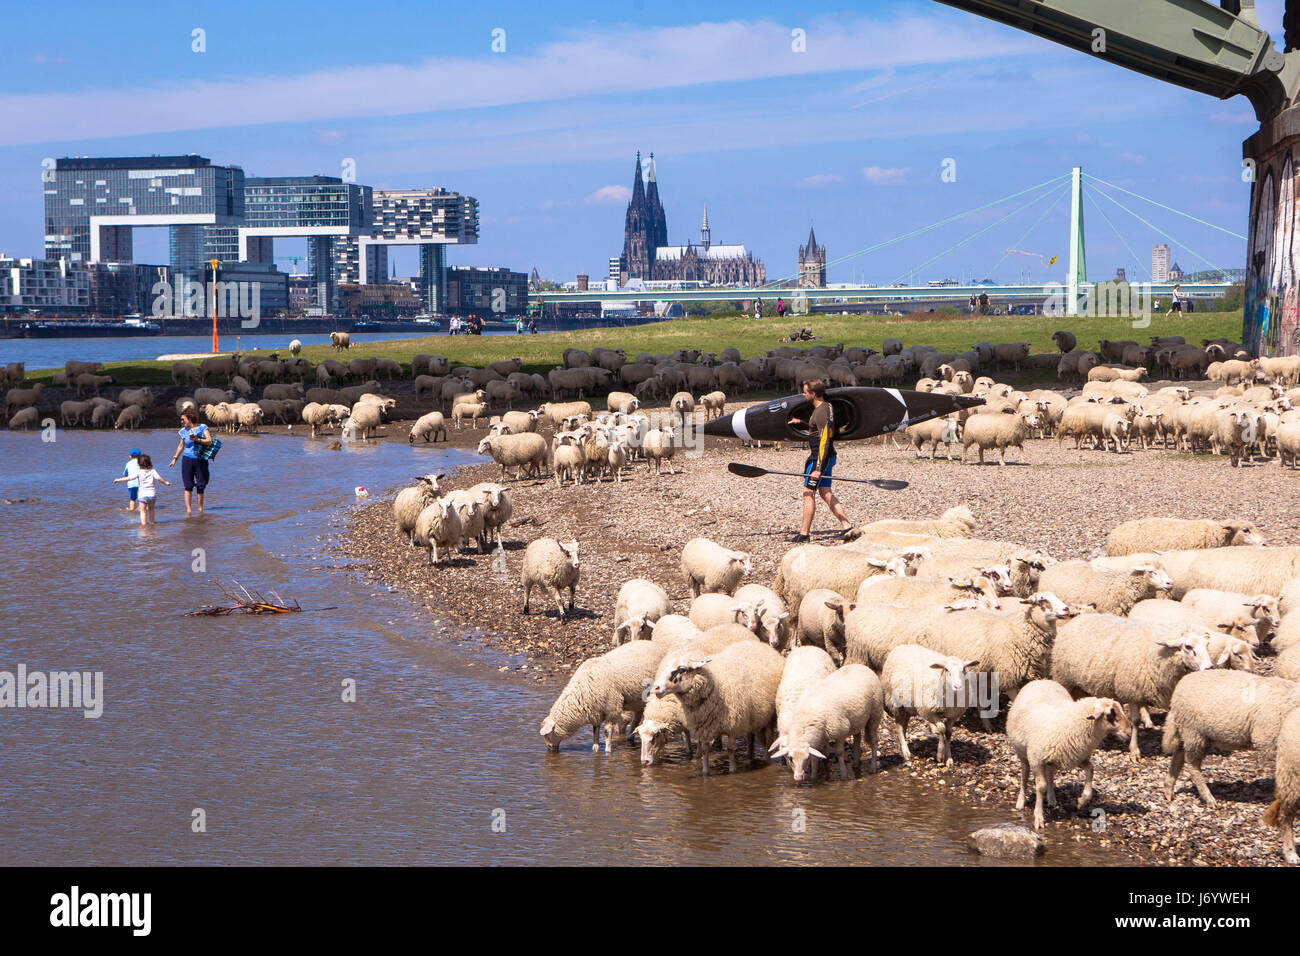 Allemagne, Cologne, moutons sur les prairies du Rhin dans le quartier de Deutz, le Crane de maisons dans le port de Rheinau, la cathédrale. Banque D'Images